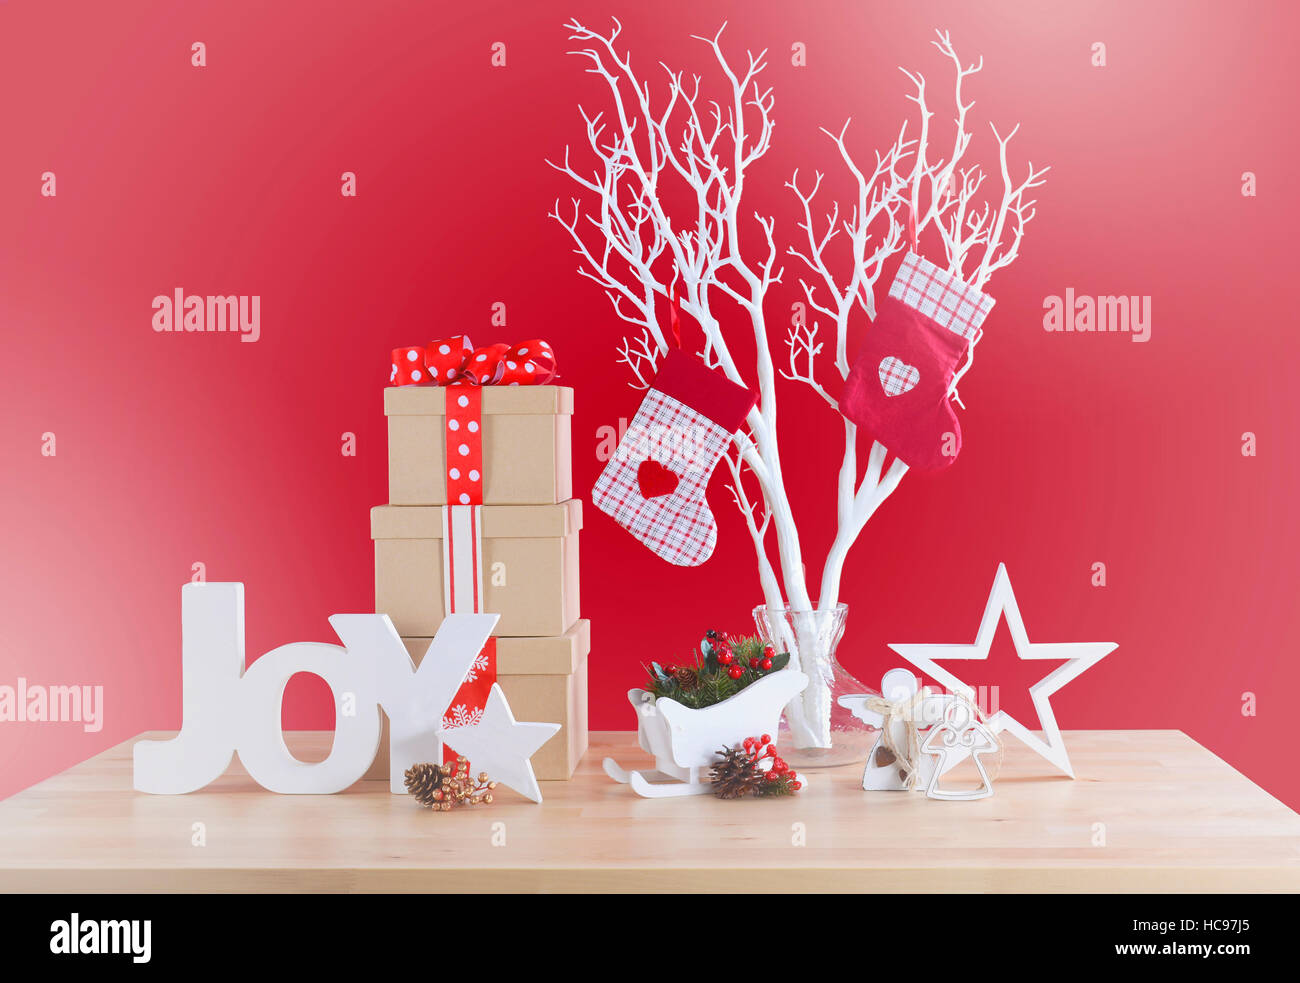 Tema moderno rosso e bianco tema natale tabella con ramo di albero e decorazioni, con applicata sbiadito in stile retrò i filtri. Foto Stock